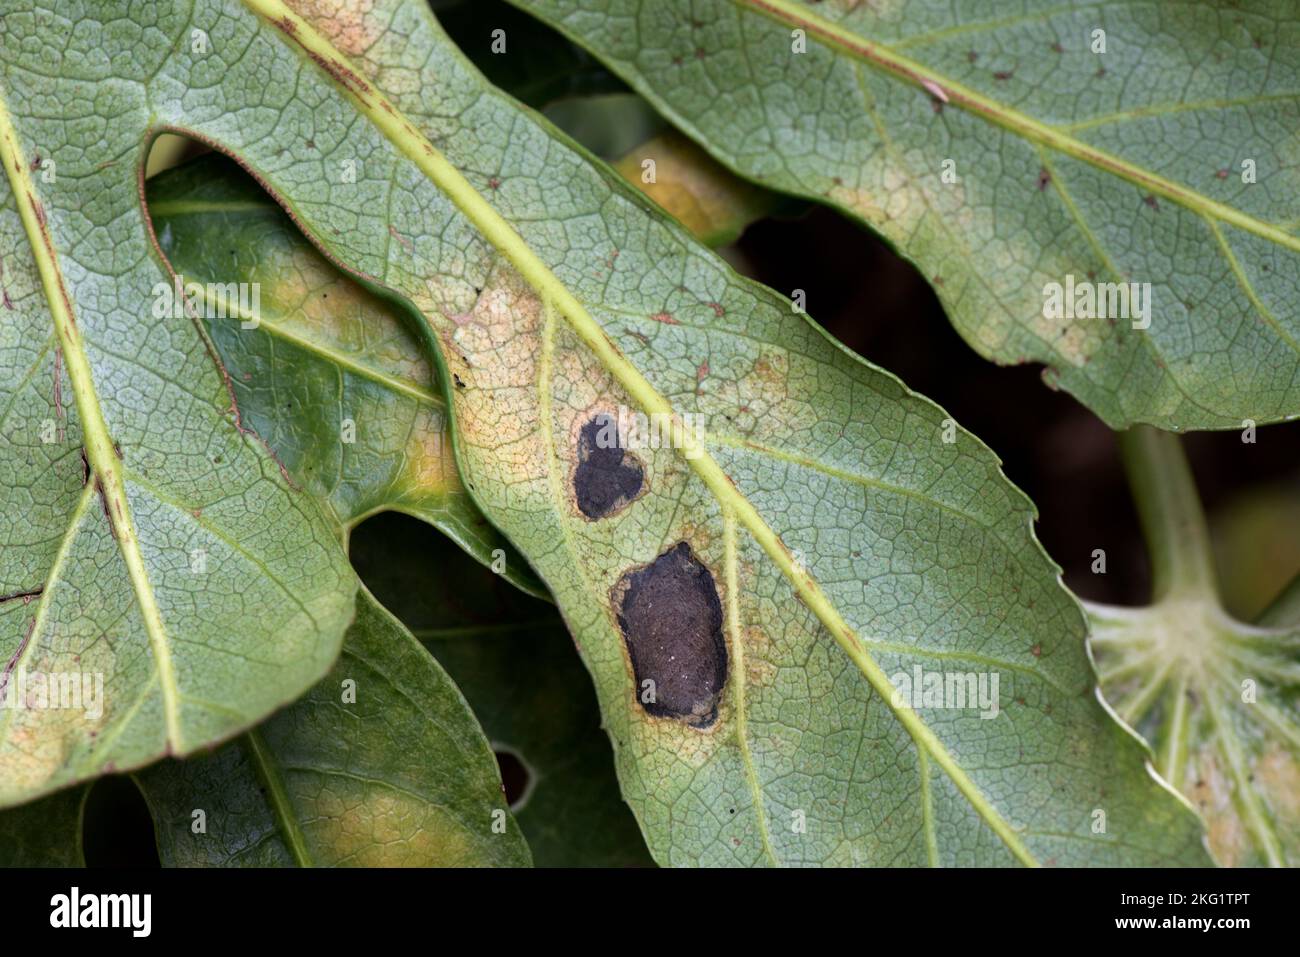 Type d'acarien cloque dommages à la face inférieure d'une Fatsia japonica, un jardin ornemental, feuille variégée, la cause exacte n'est pas connue, octobre Banque D'Images